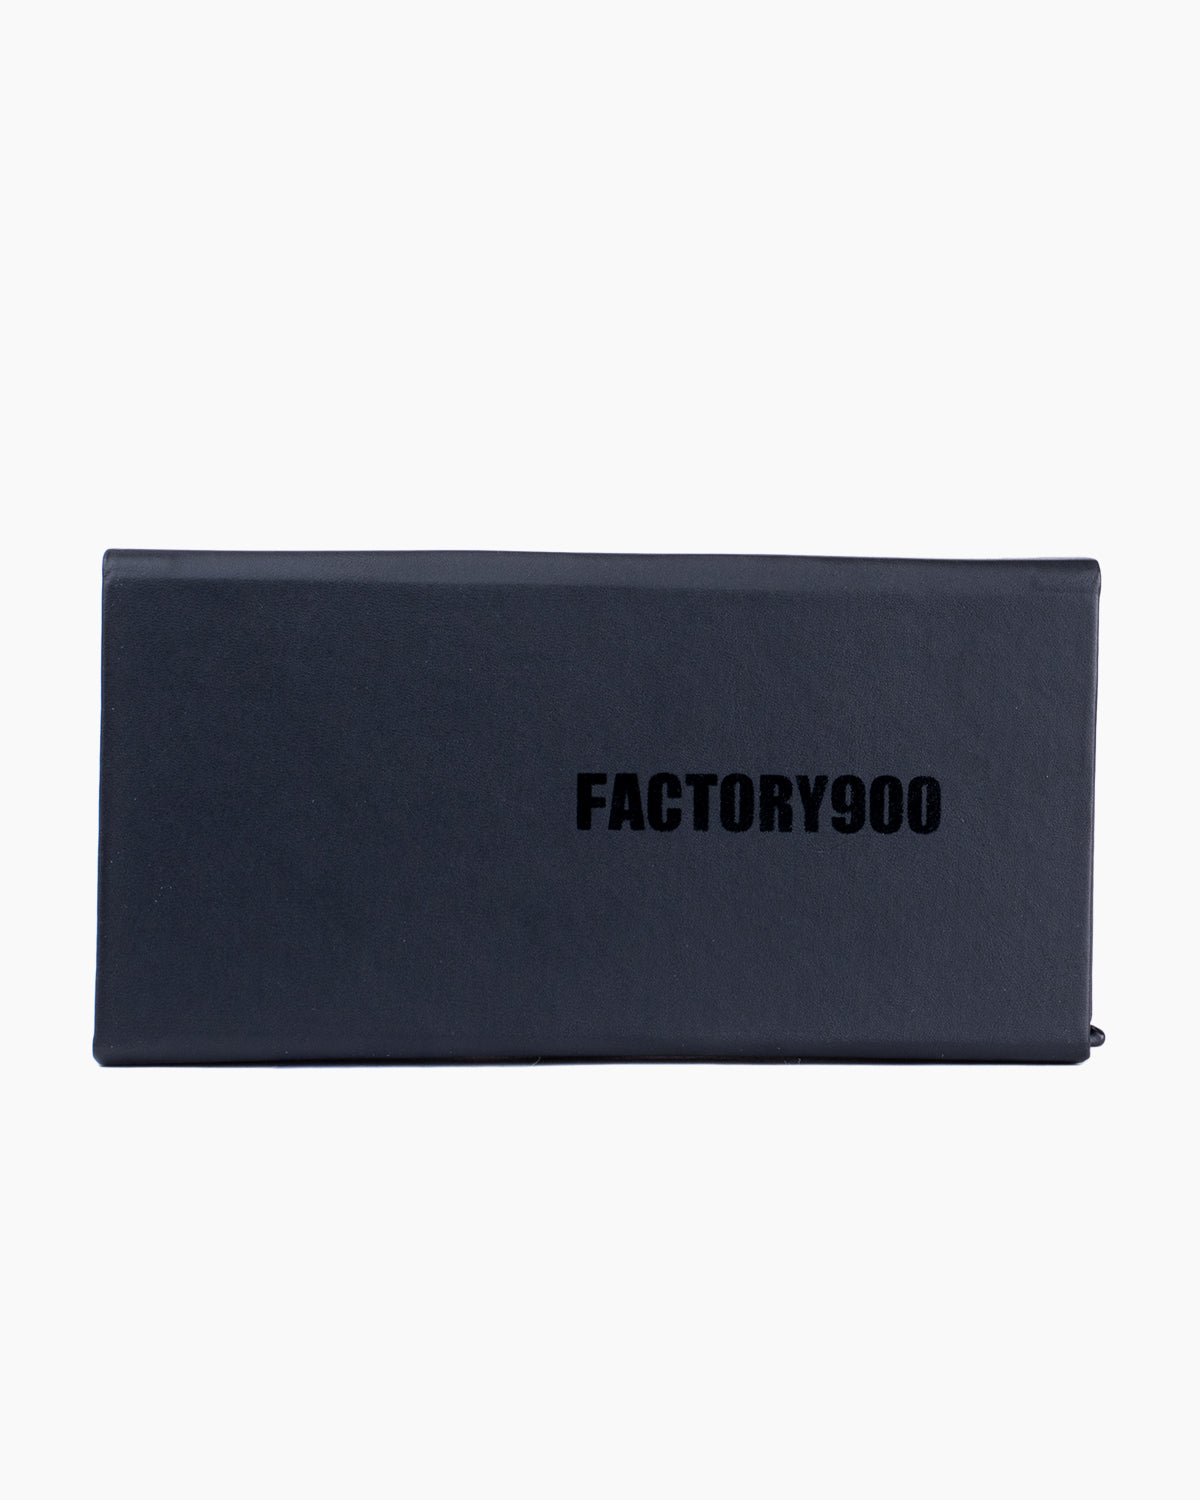 Factory 900 - Hachi - 738 | Bar à lunettes